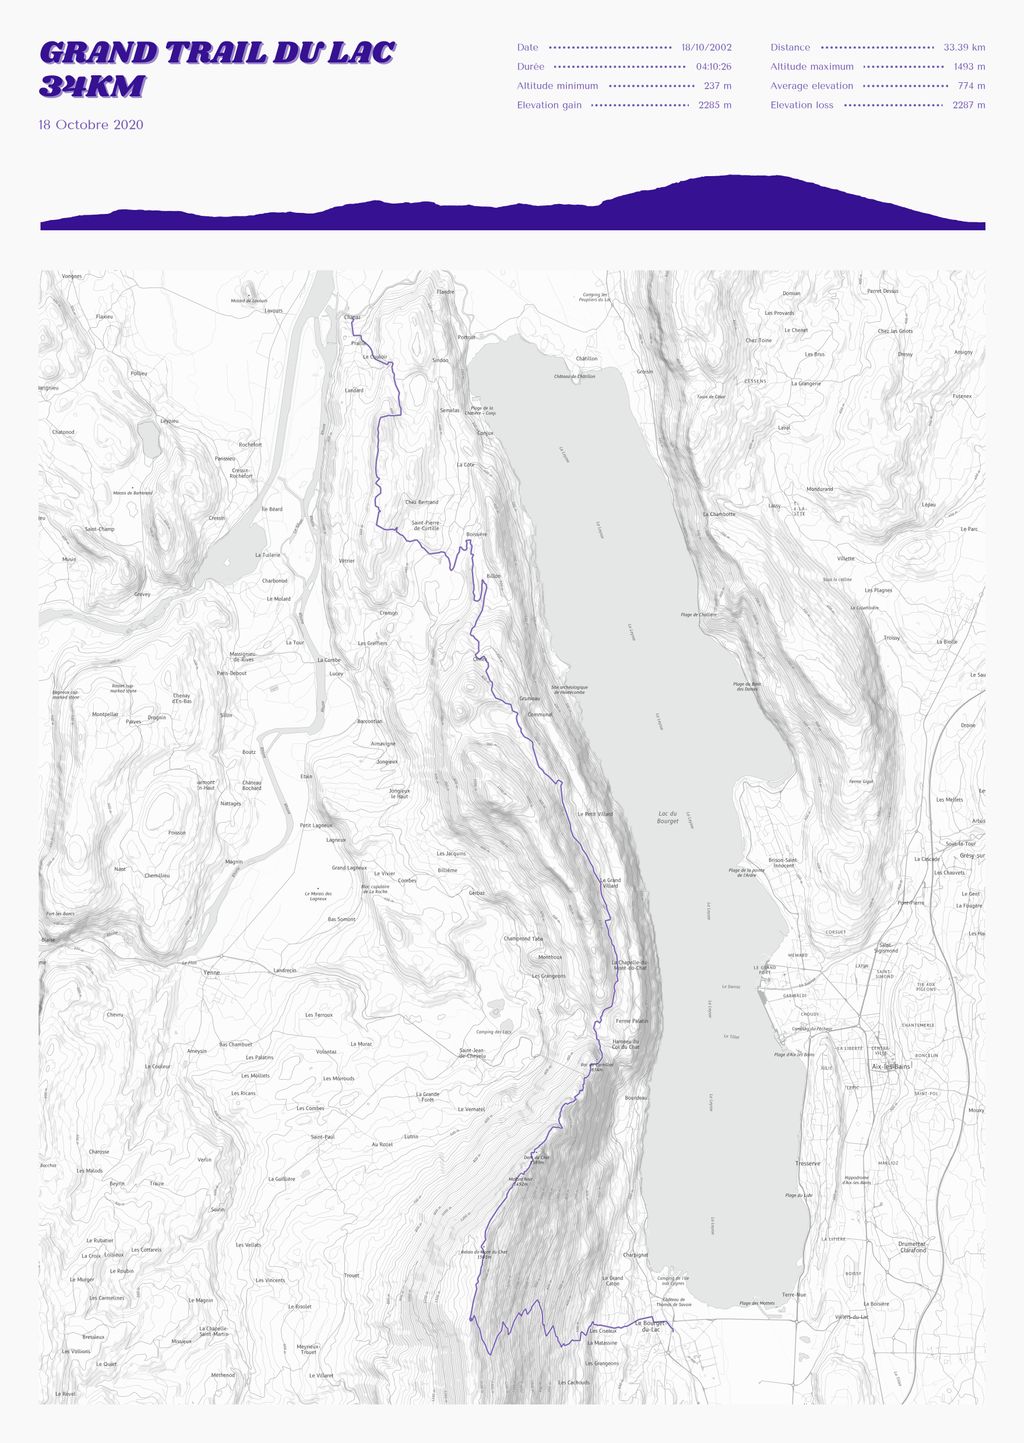 Poster cartographique du Grand Trail du Lac
34km